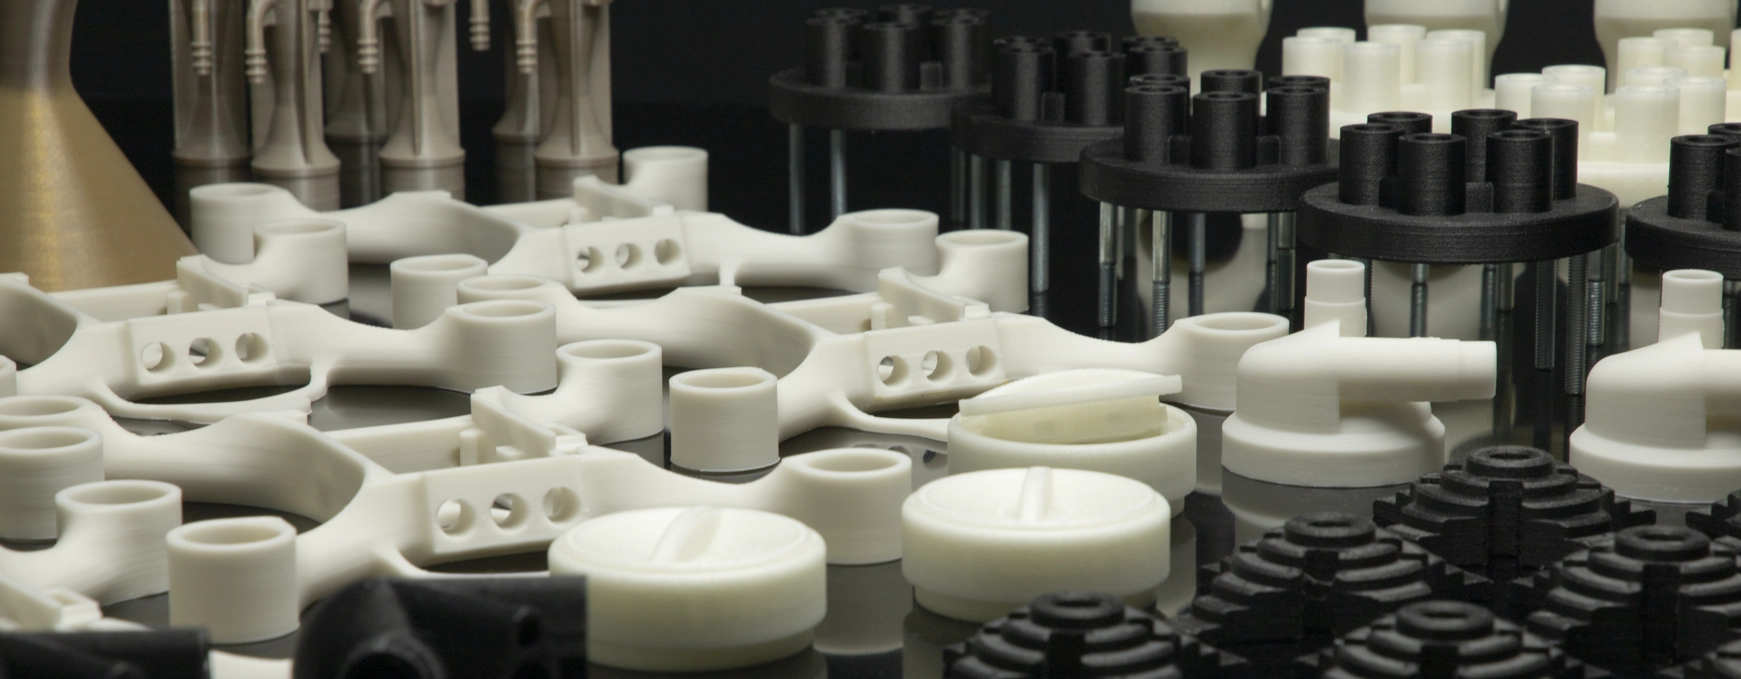 3D-printing-industries